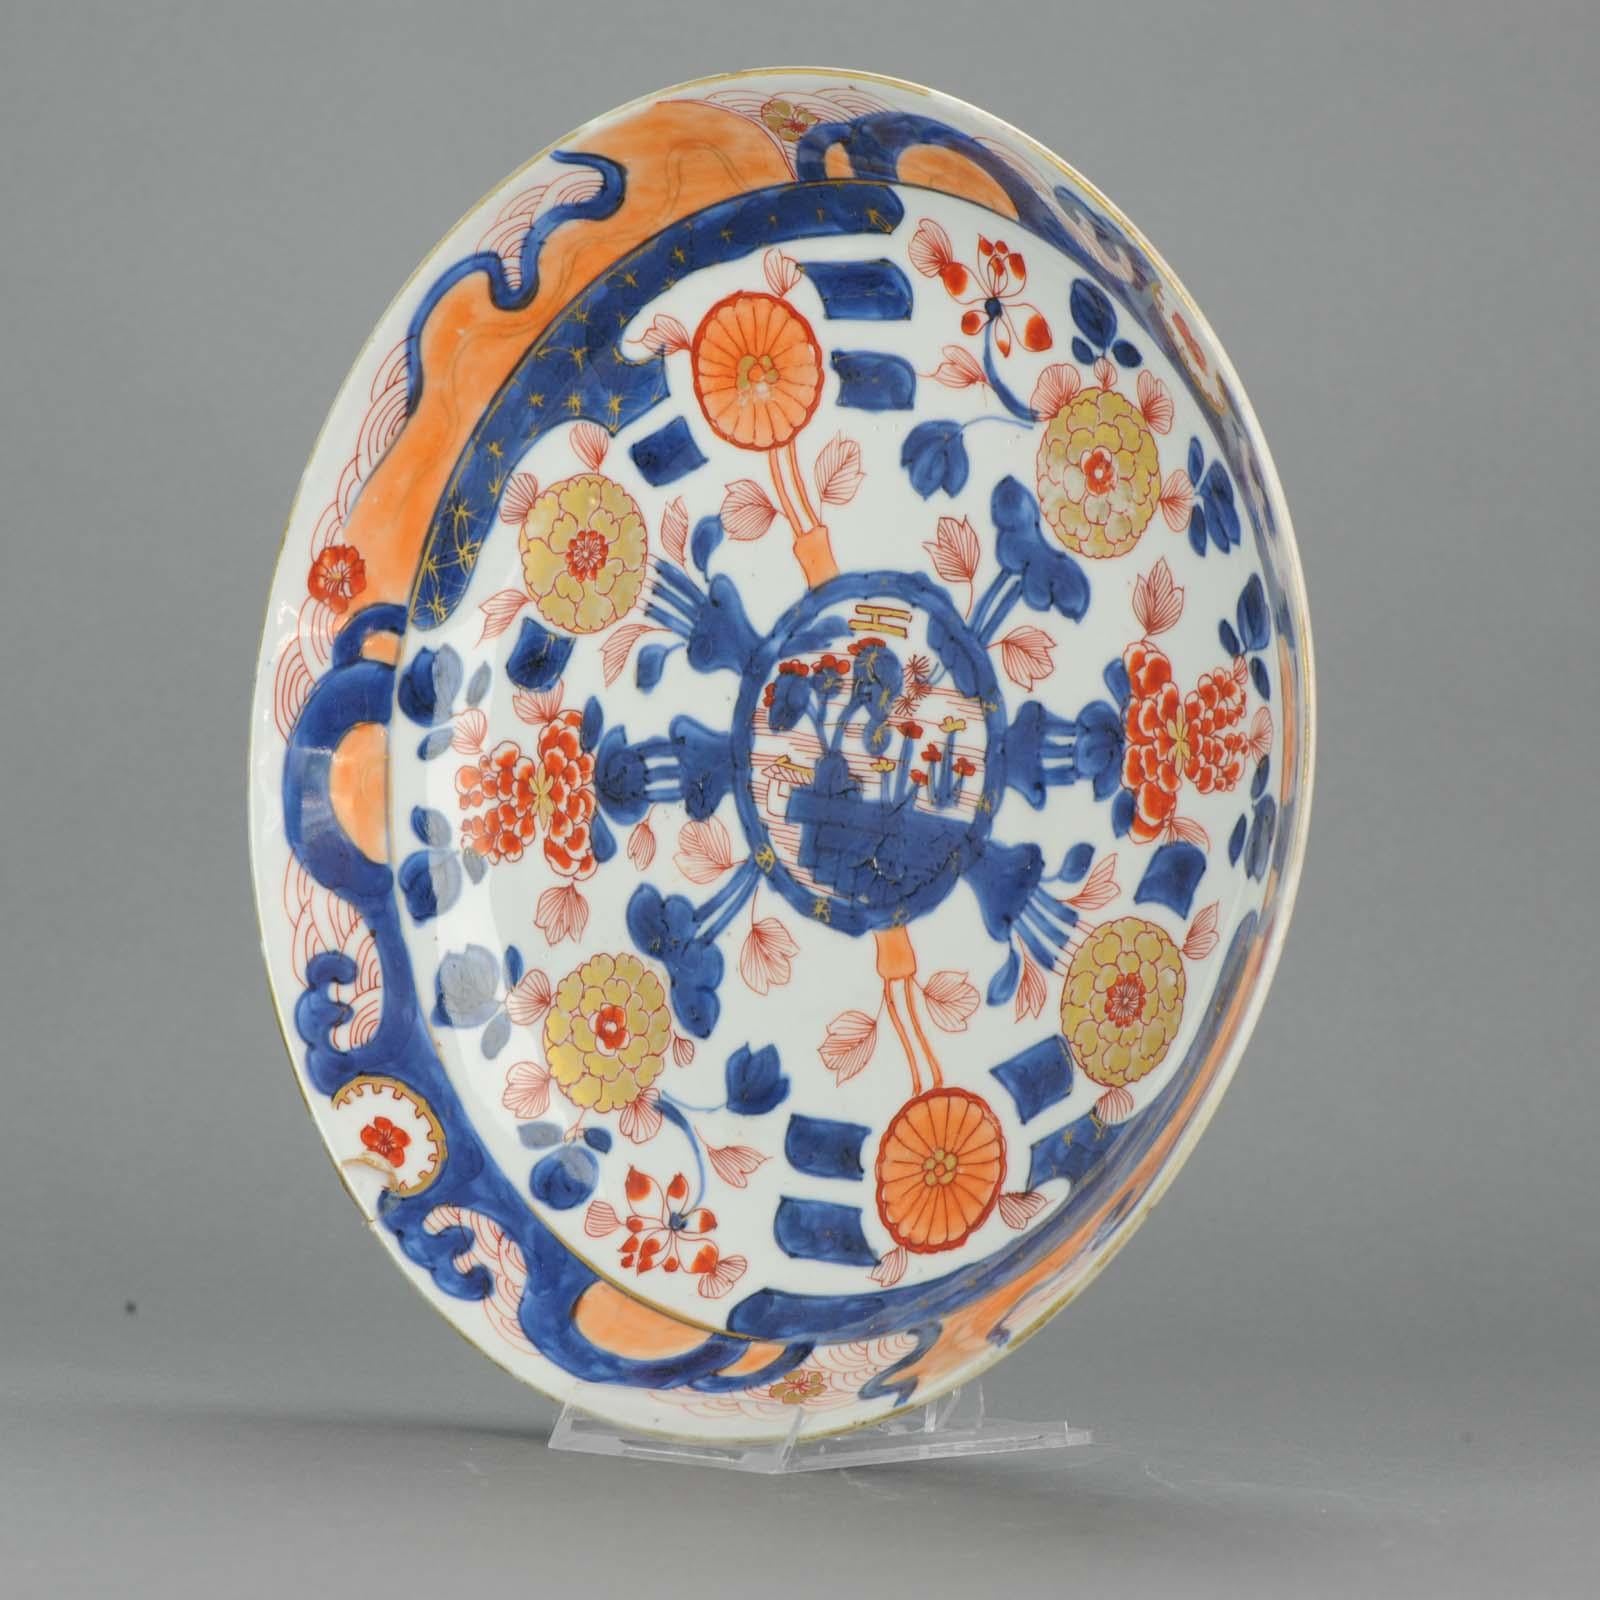 Ein sehr schön dekorierter Qianlong-Speiseteller. Datierung: ca. 1710

 

5-6-18-AR-557

Zustand
Gesamtzustand mit Felgenfehlern und einem restaurierten nachgeklebten Chip Größe 268mm

Zeitraum
18. Jahrhundert Qing (1661-1912).